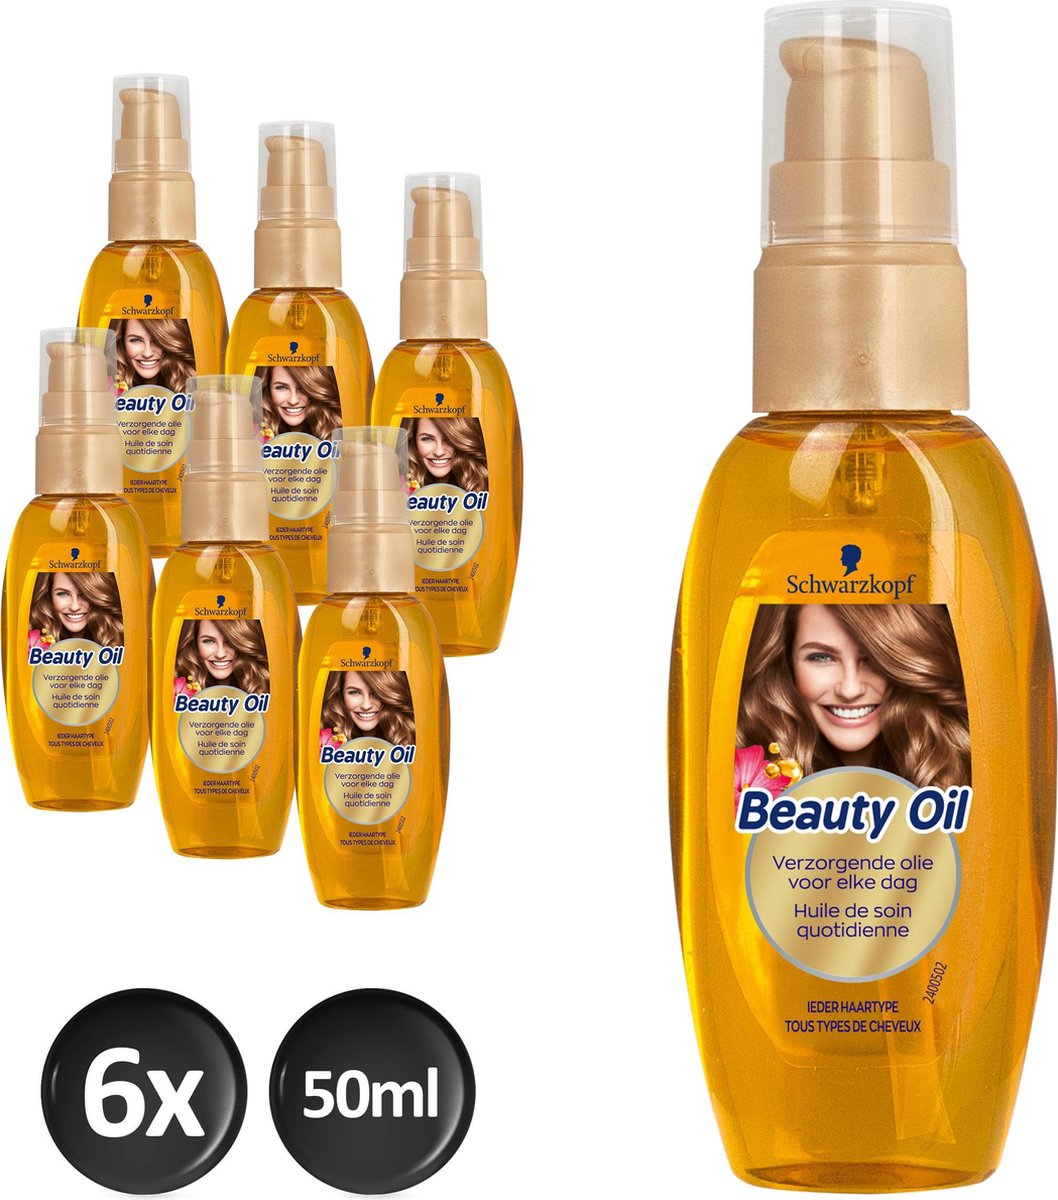 Schwarzkopf Treatment Beauty Oil 6x